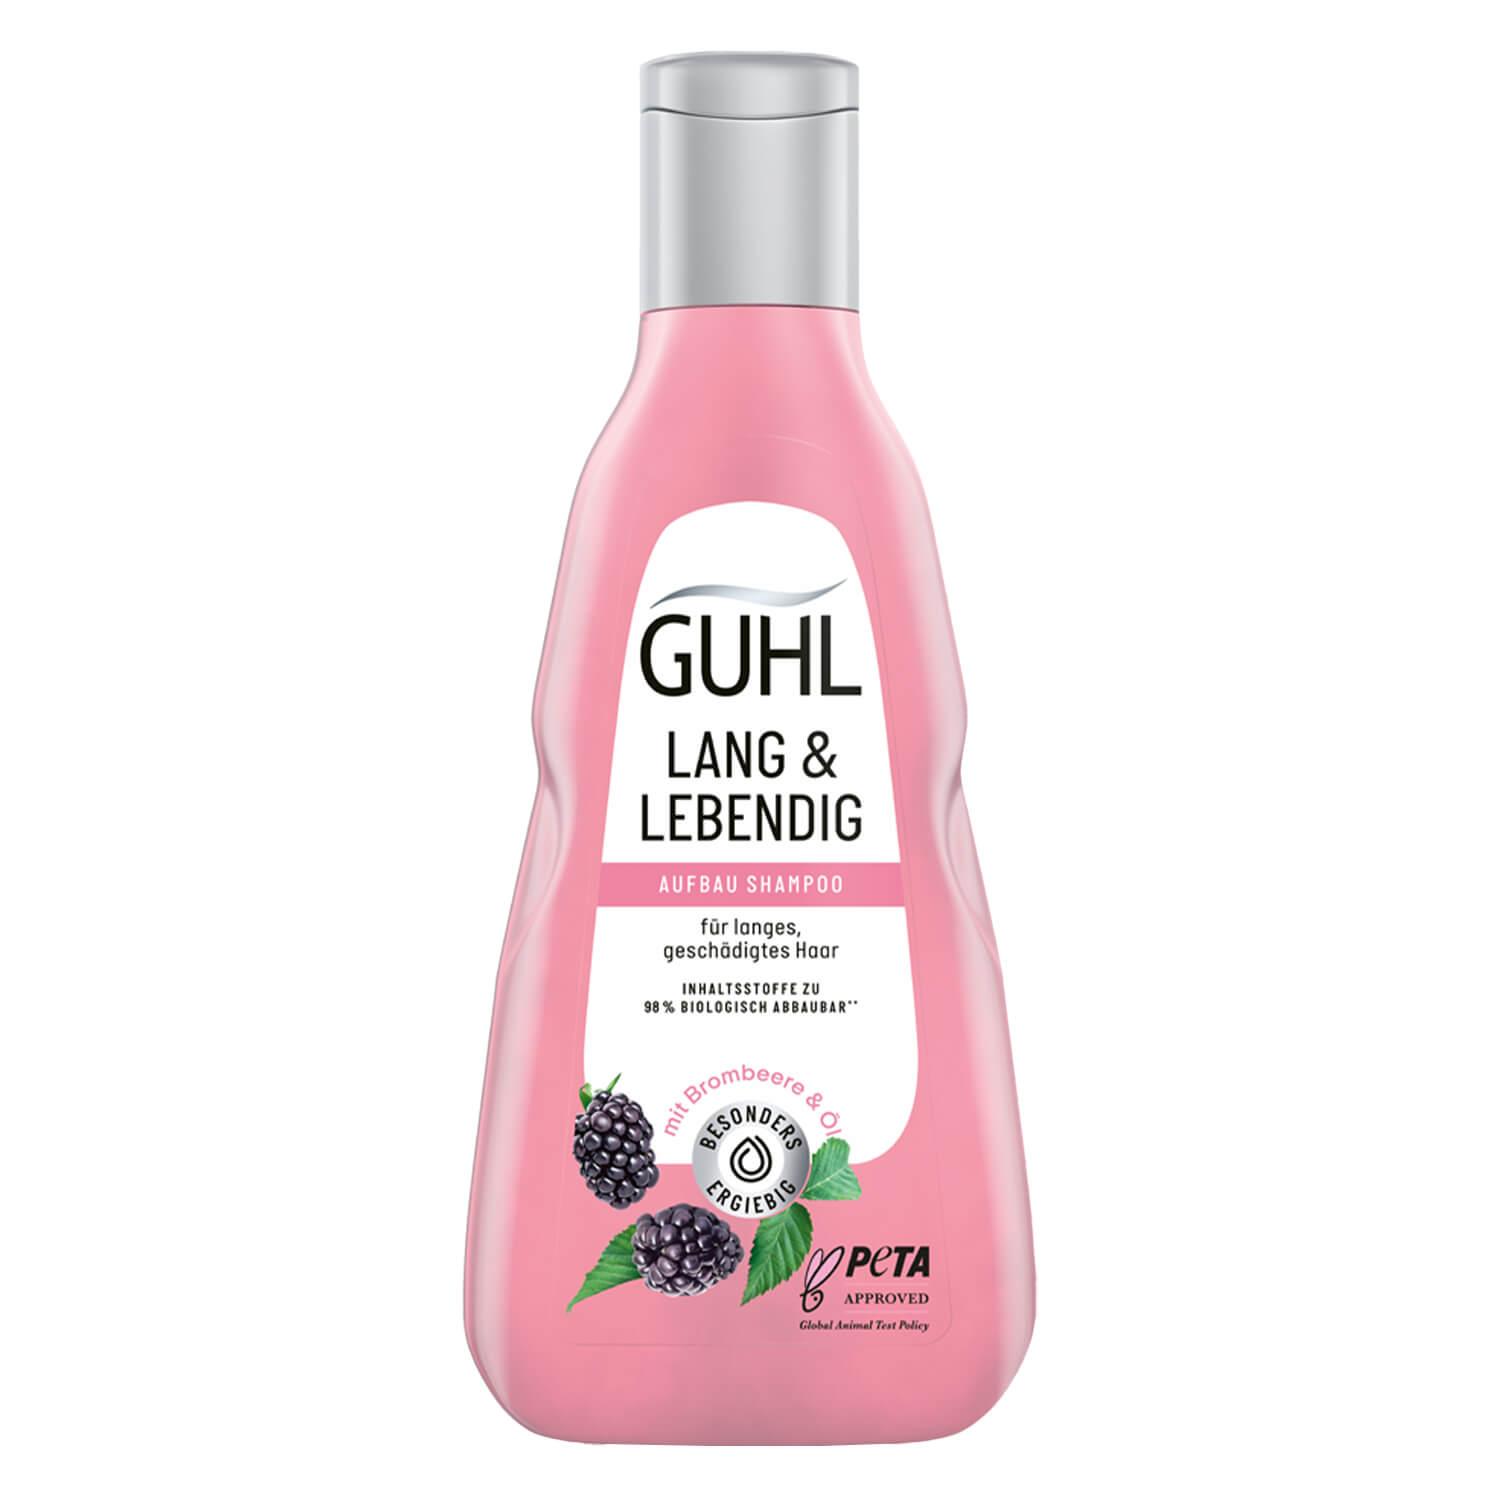 GUHL - LONG & LOVING IT Boosting Shampoo